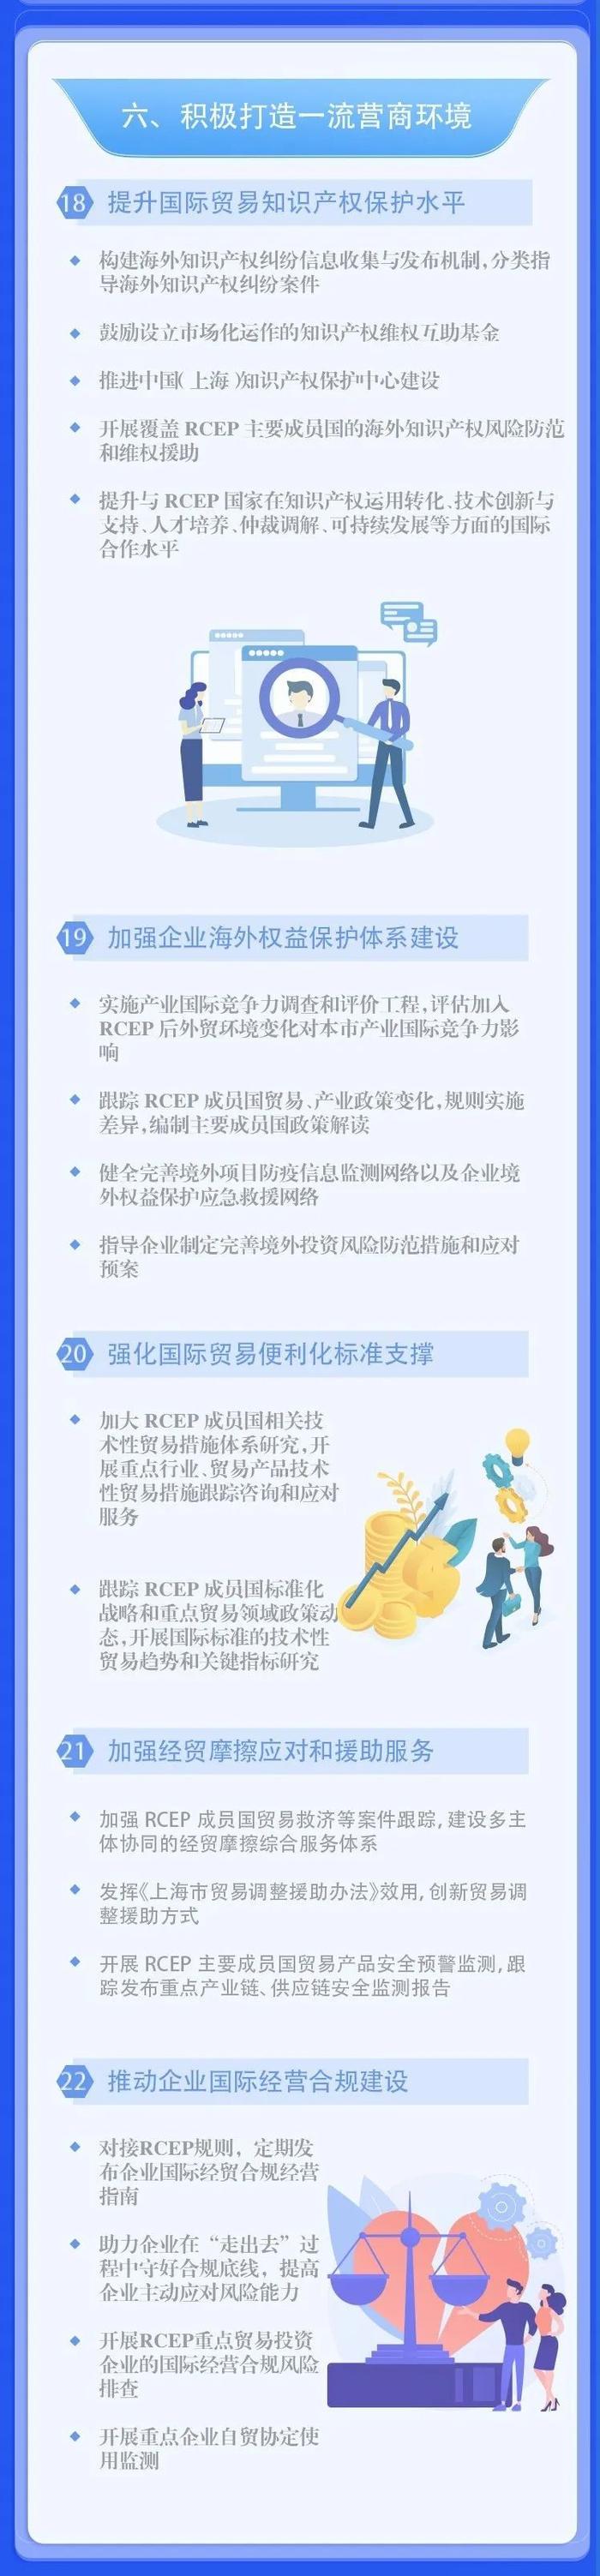 一图读懂：上海市关于高质量落实《区域全面经济伙伴关系协定》（RCEP）的若干措施